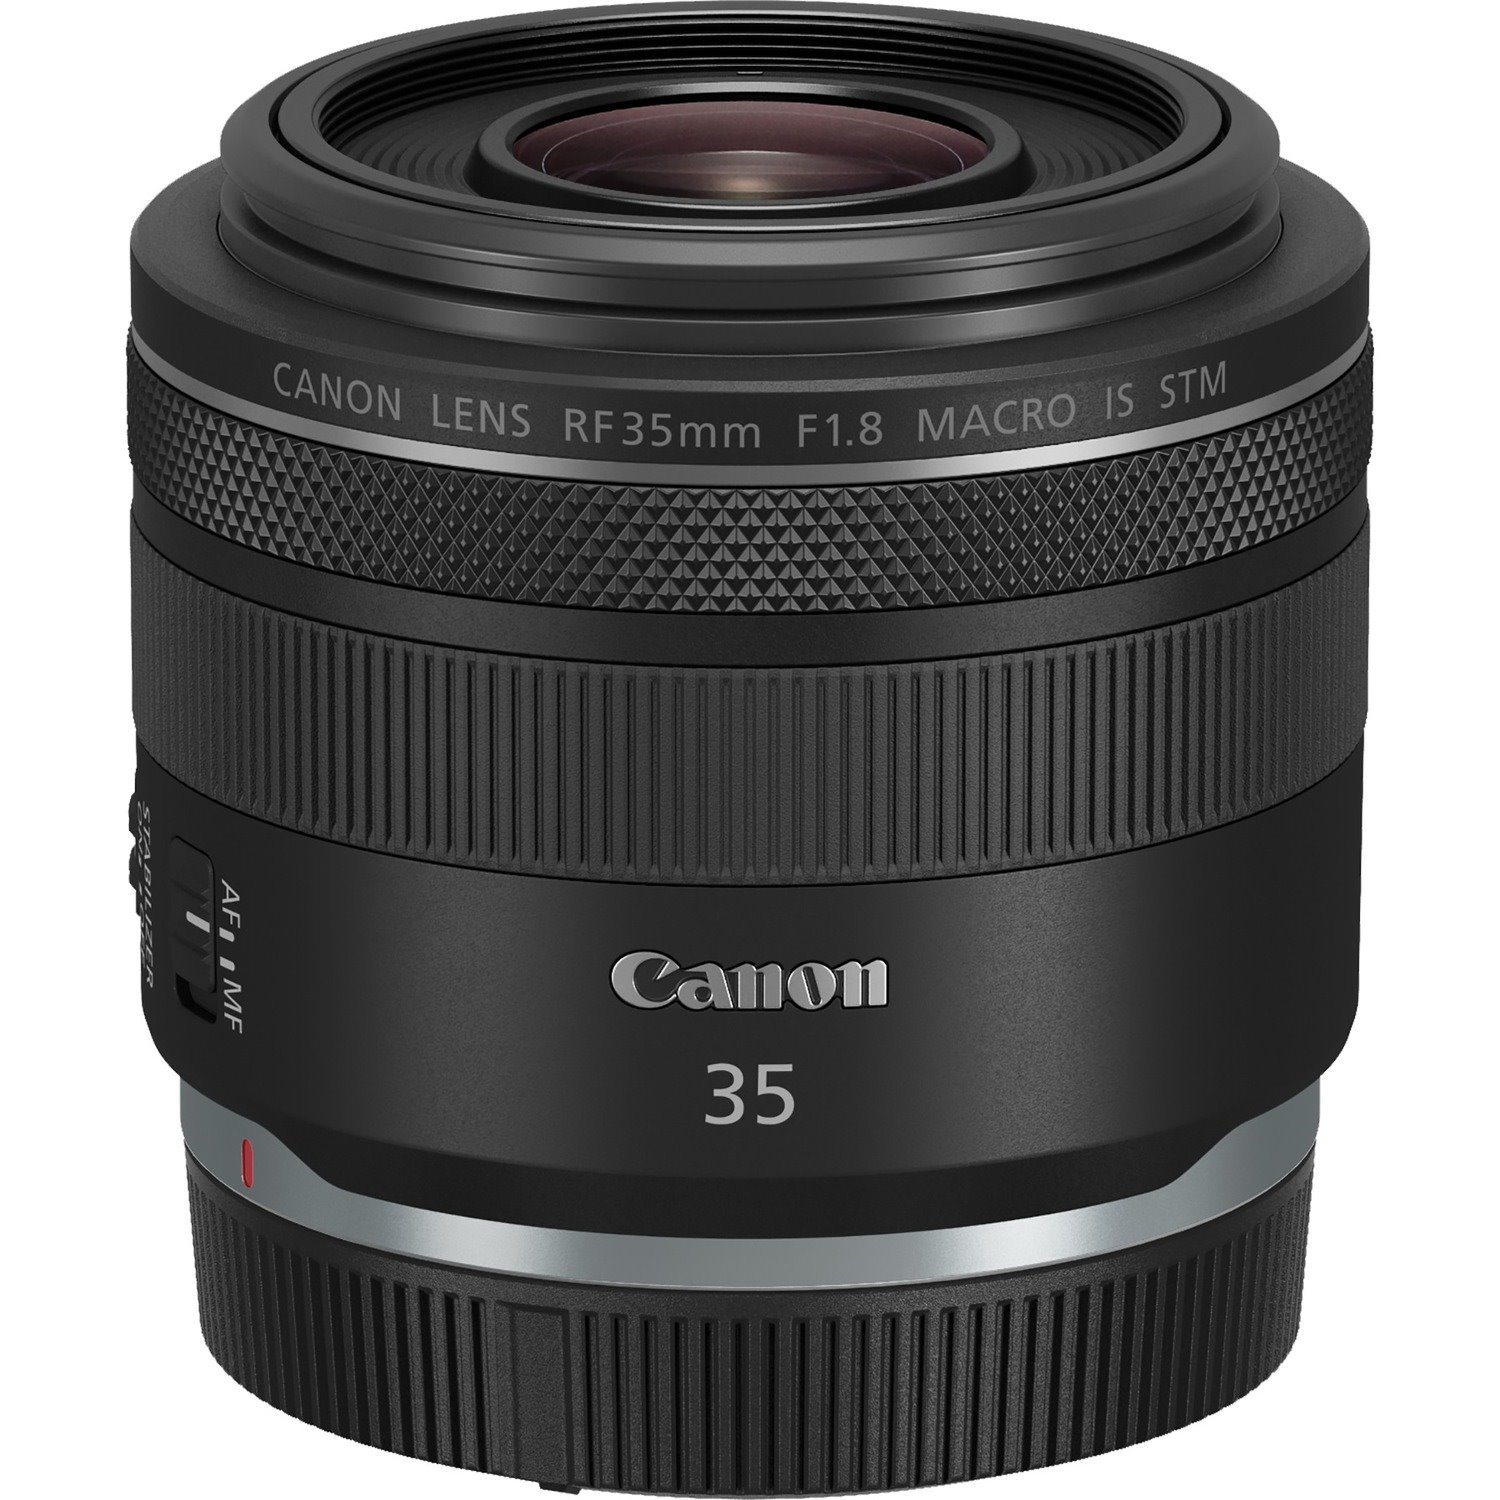 Canon - 35 mm - f/1.8 - Macro Fixed Lens